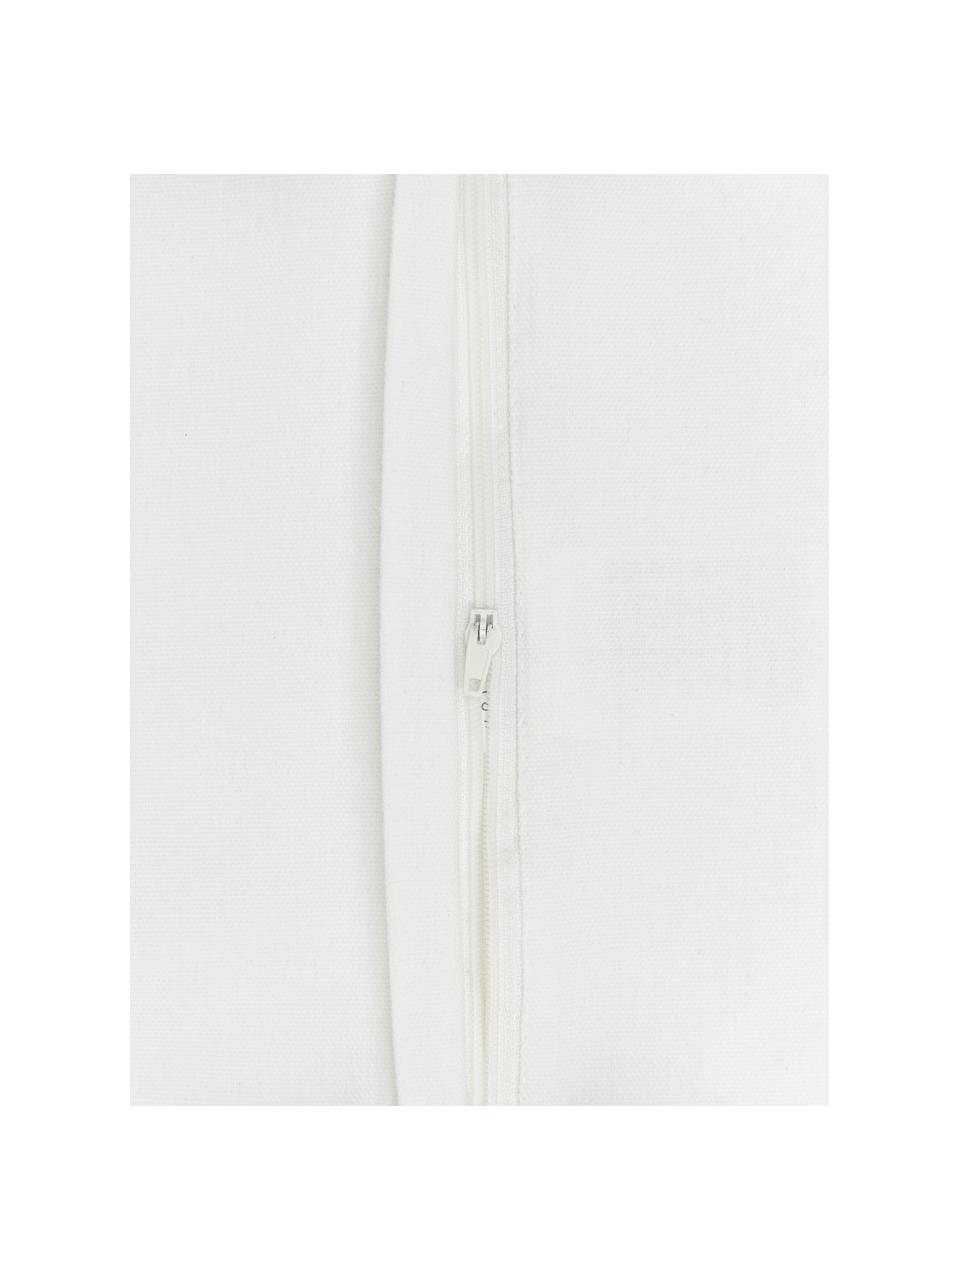 Kussenhoes Shylo in wit met kwastjes, 100% katoen, Wit, B 40 x L 40 cm